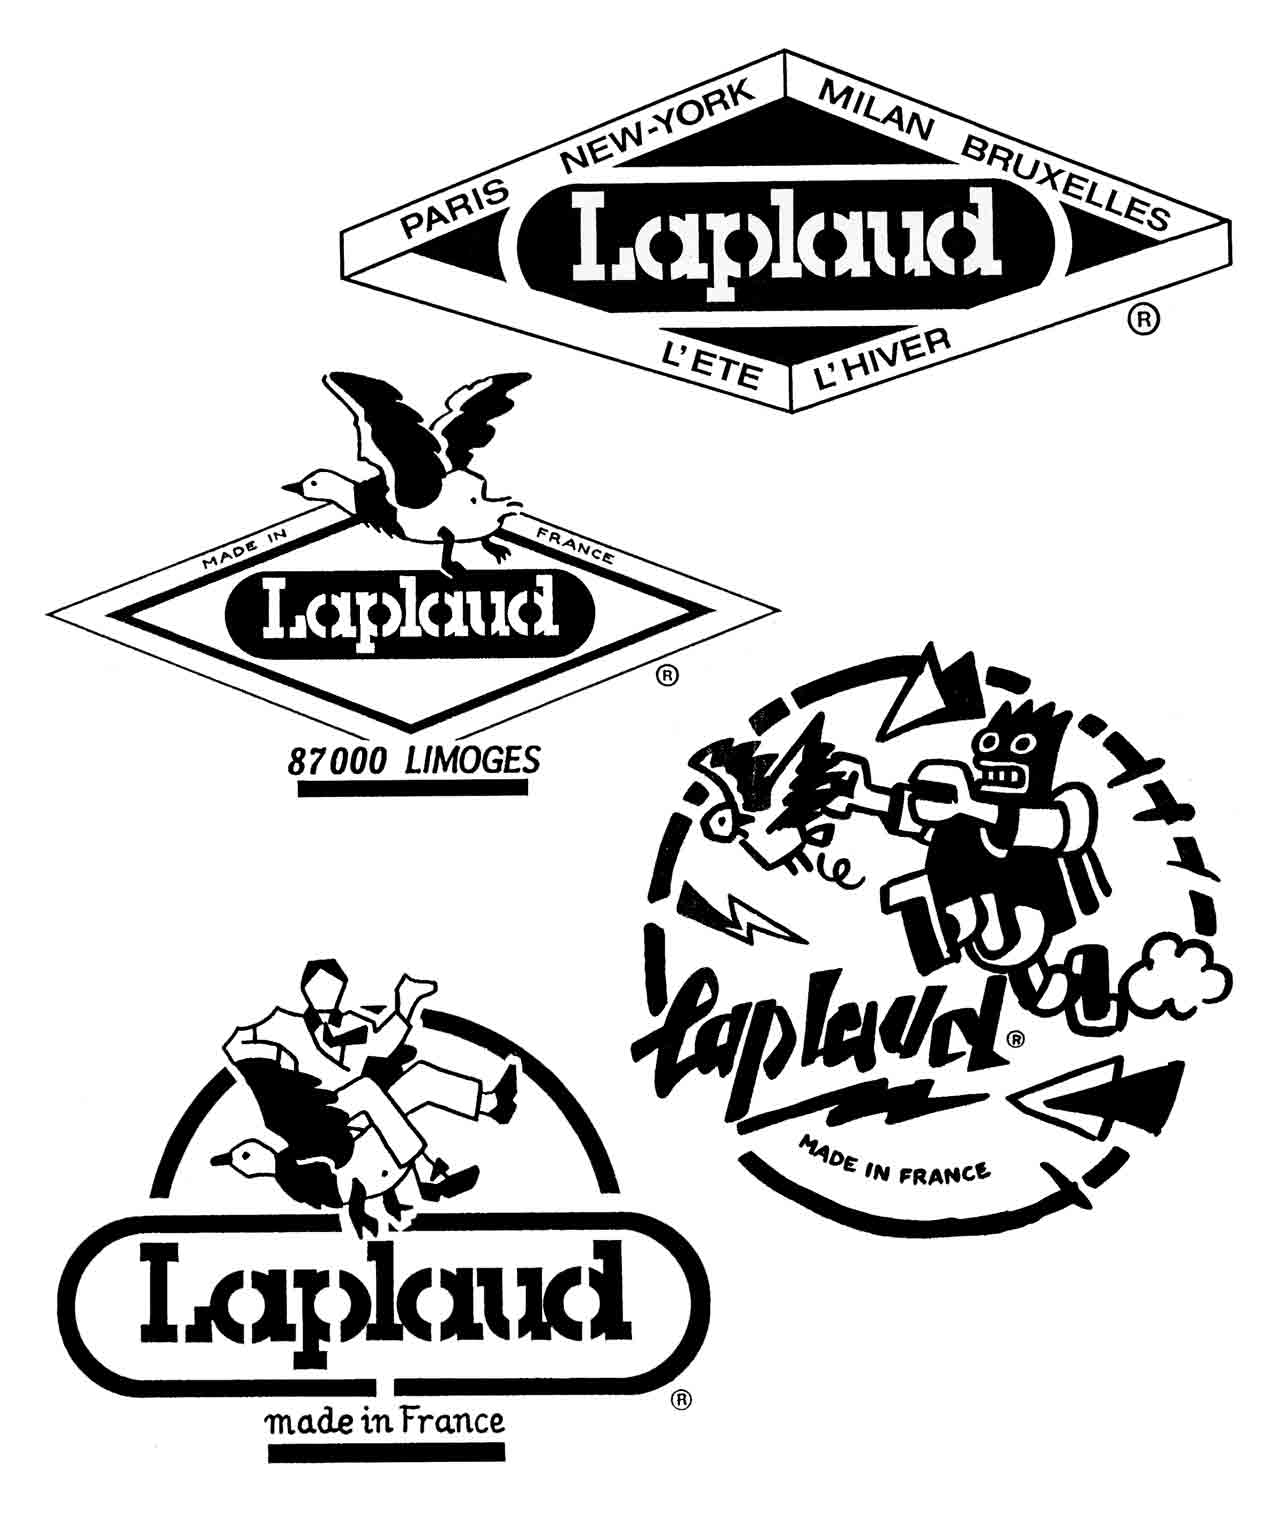 Etiquettes pour les textiles Laplaud à Limoges 1986 Marc-André BD Illustration Graphisme Limoges